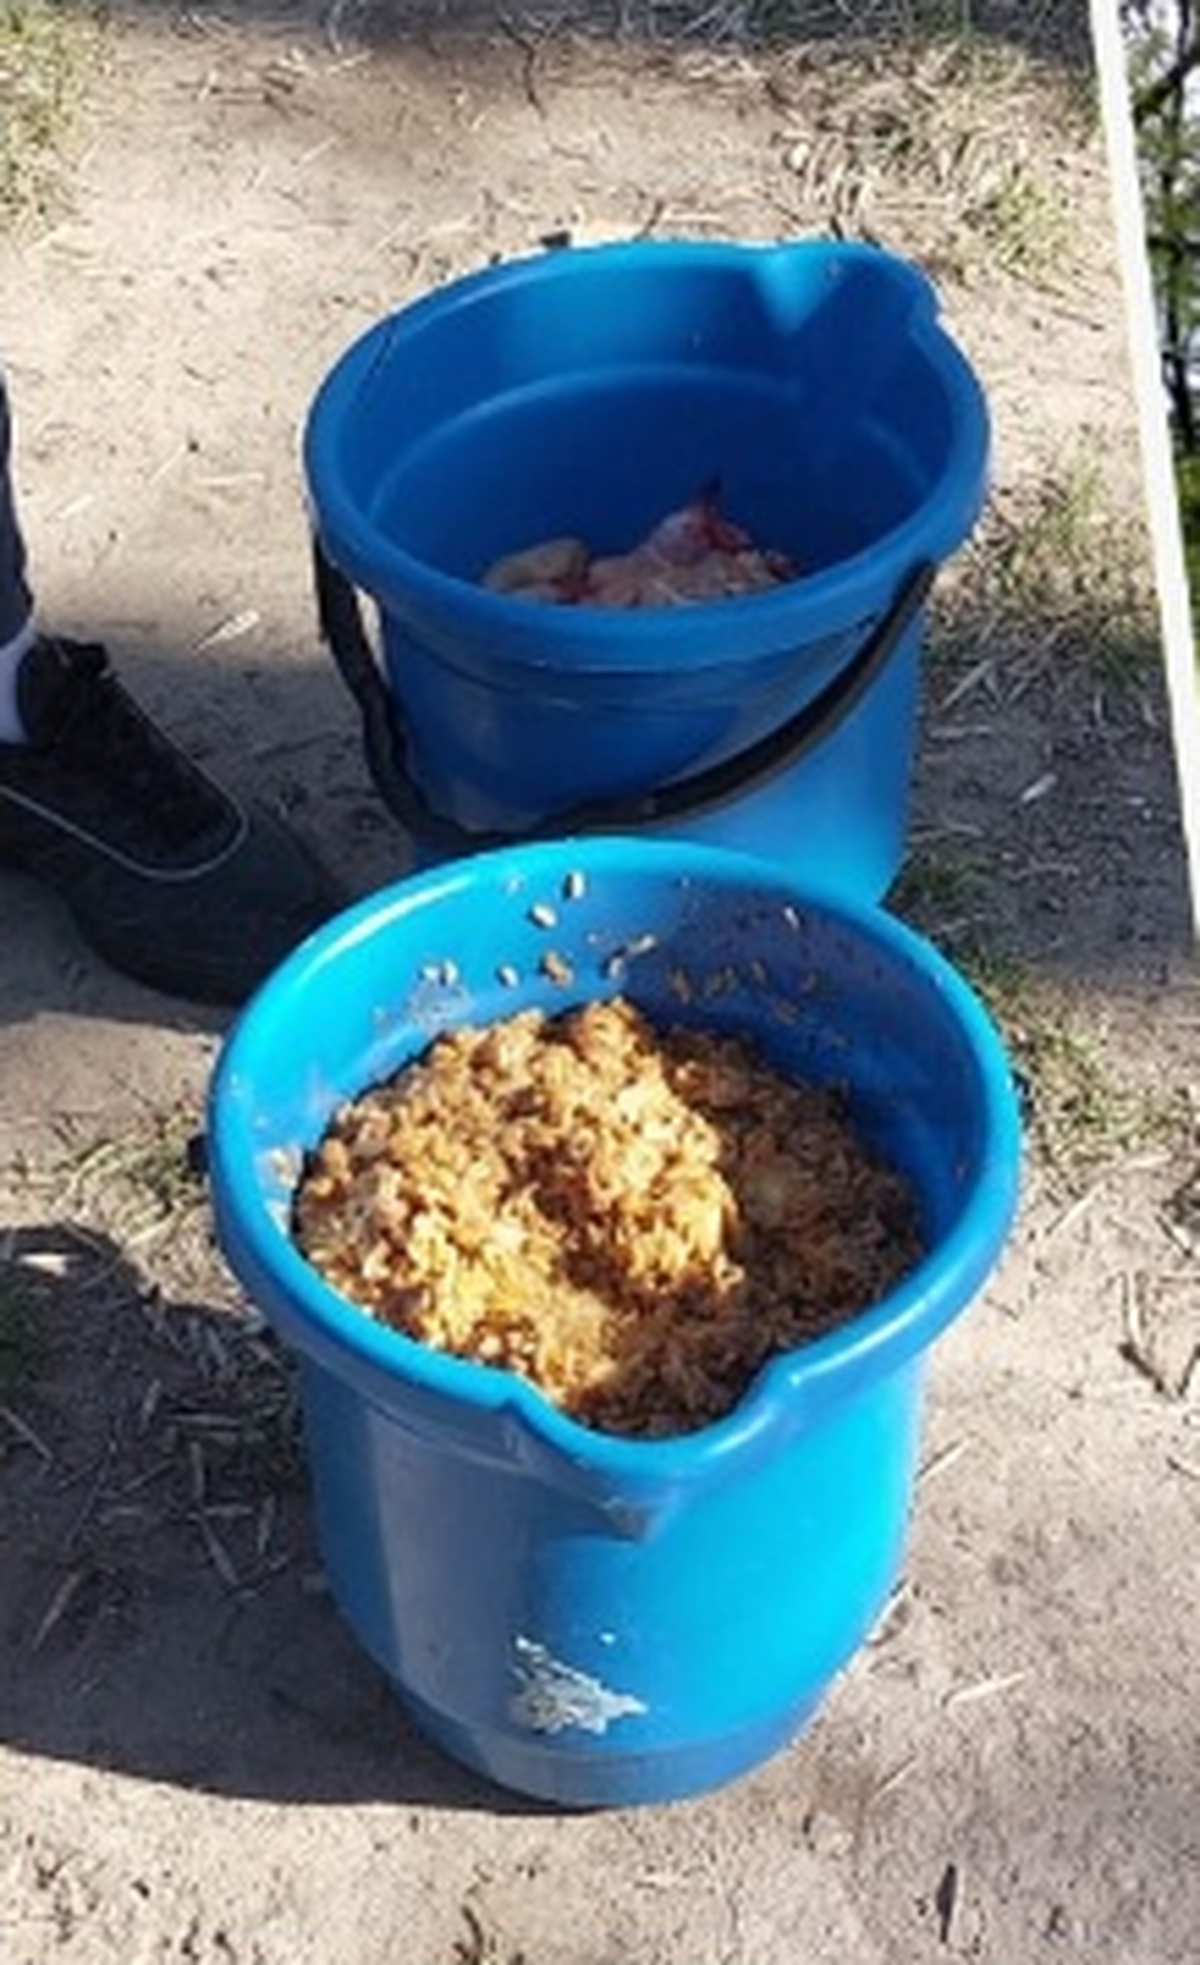 La foto que sacó Vitaller de los baldes con restos de comida y que difundió en redes sociales.